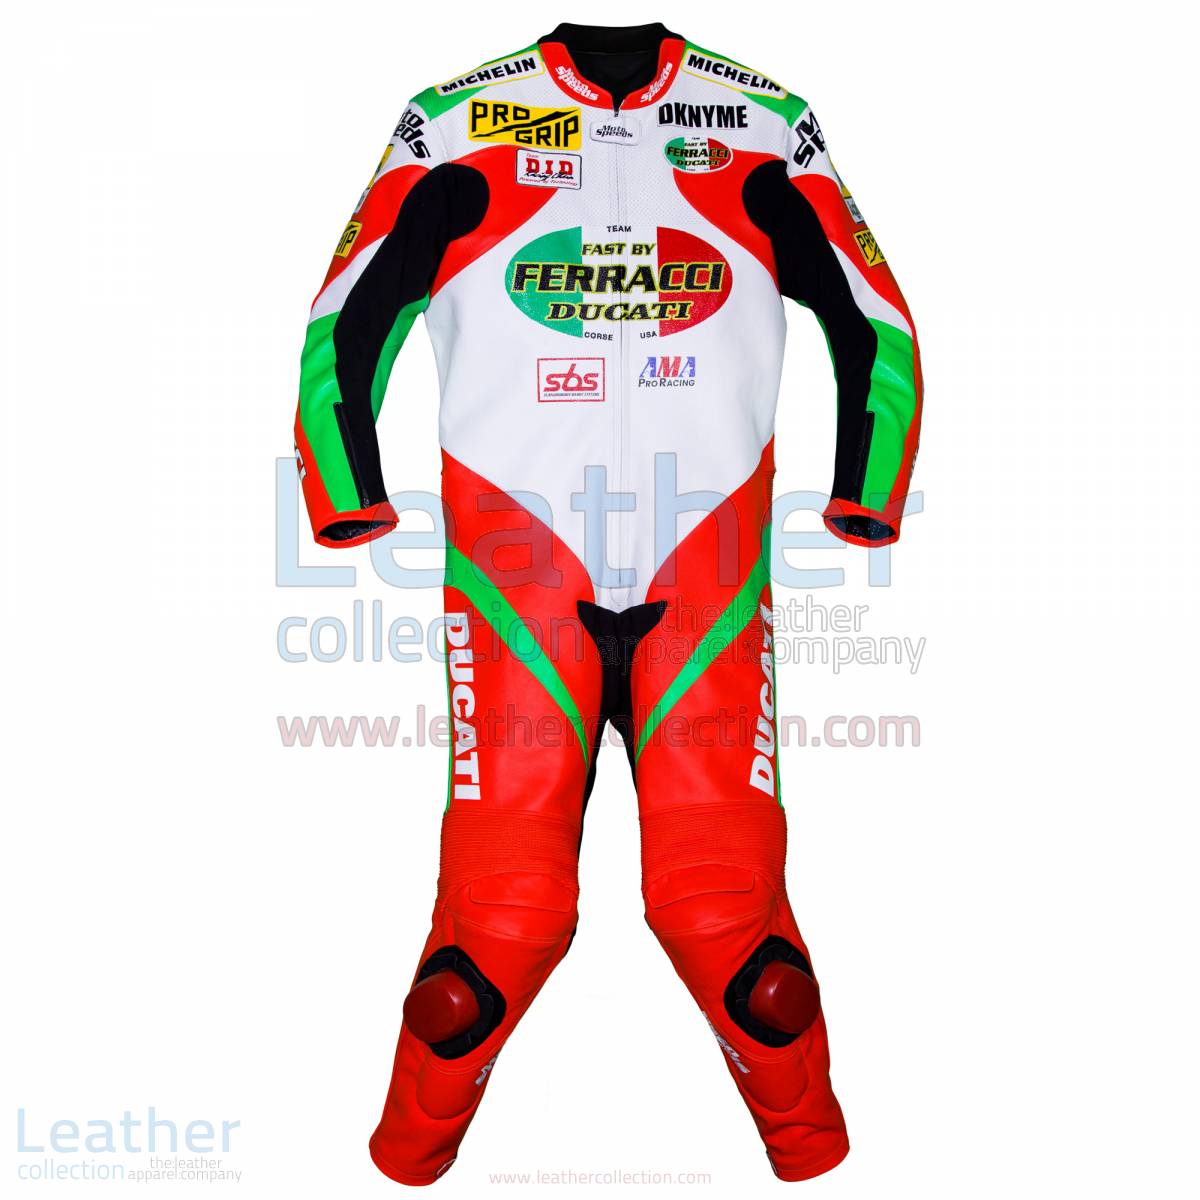 Mat Mladin Ducati AMA Race Suit – Ducati Suit